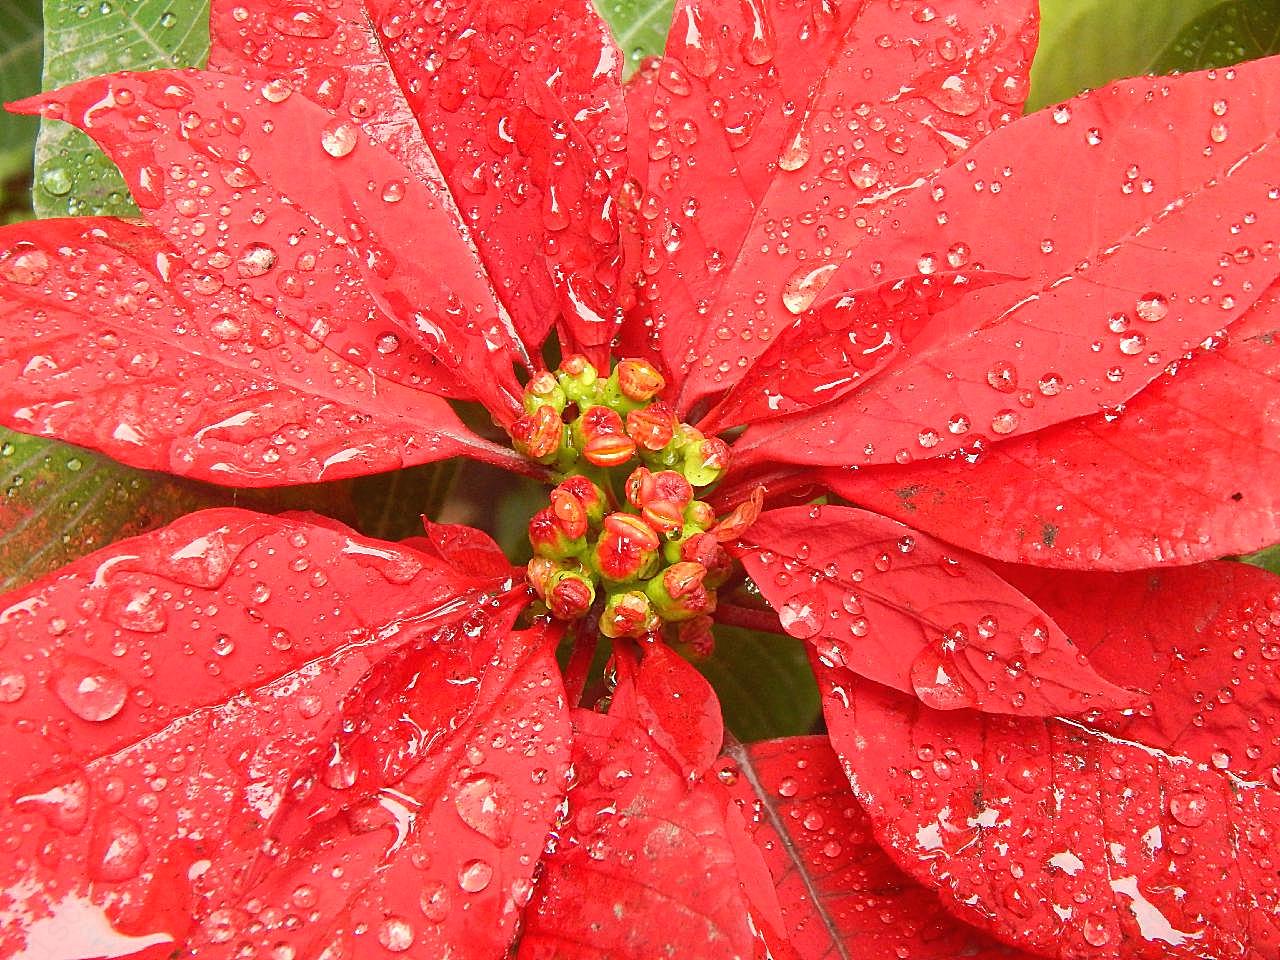 高清雨珠红叶子图片摄影